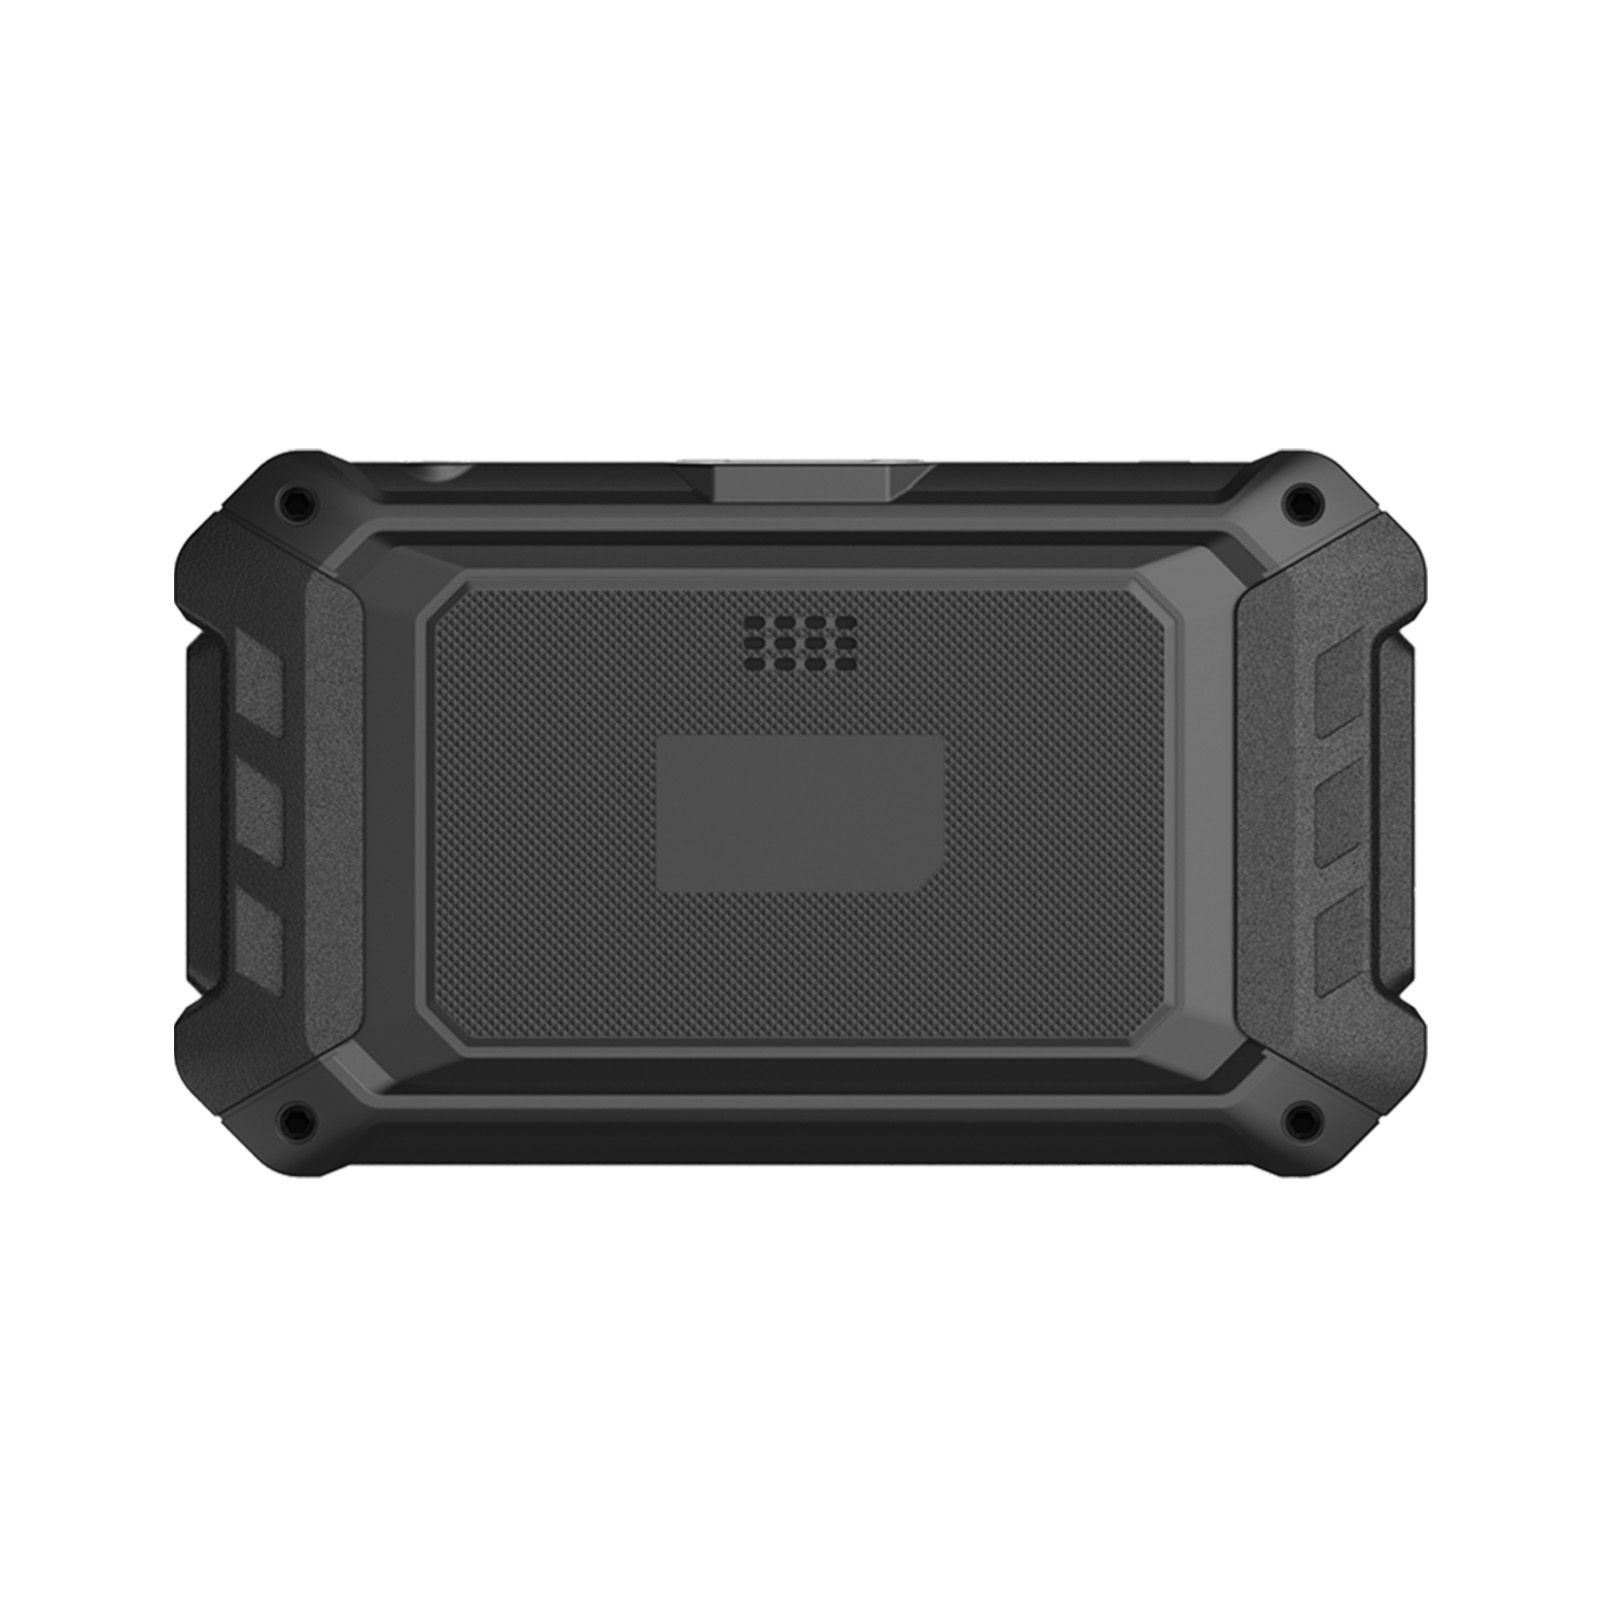 OBDSTAR iScan KTM/HUSQVARNA 스마트 오토바이 진단 도구 휴대용 태블릿